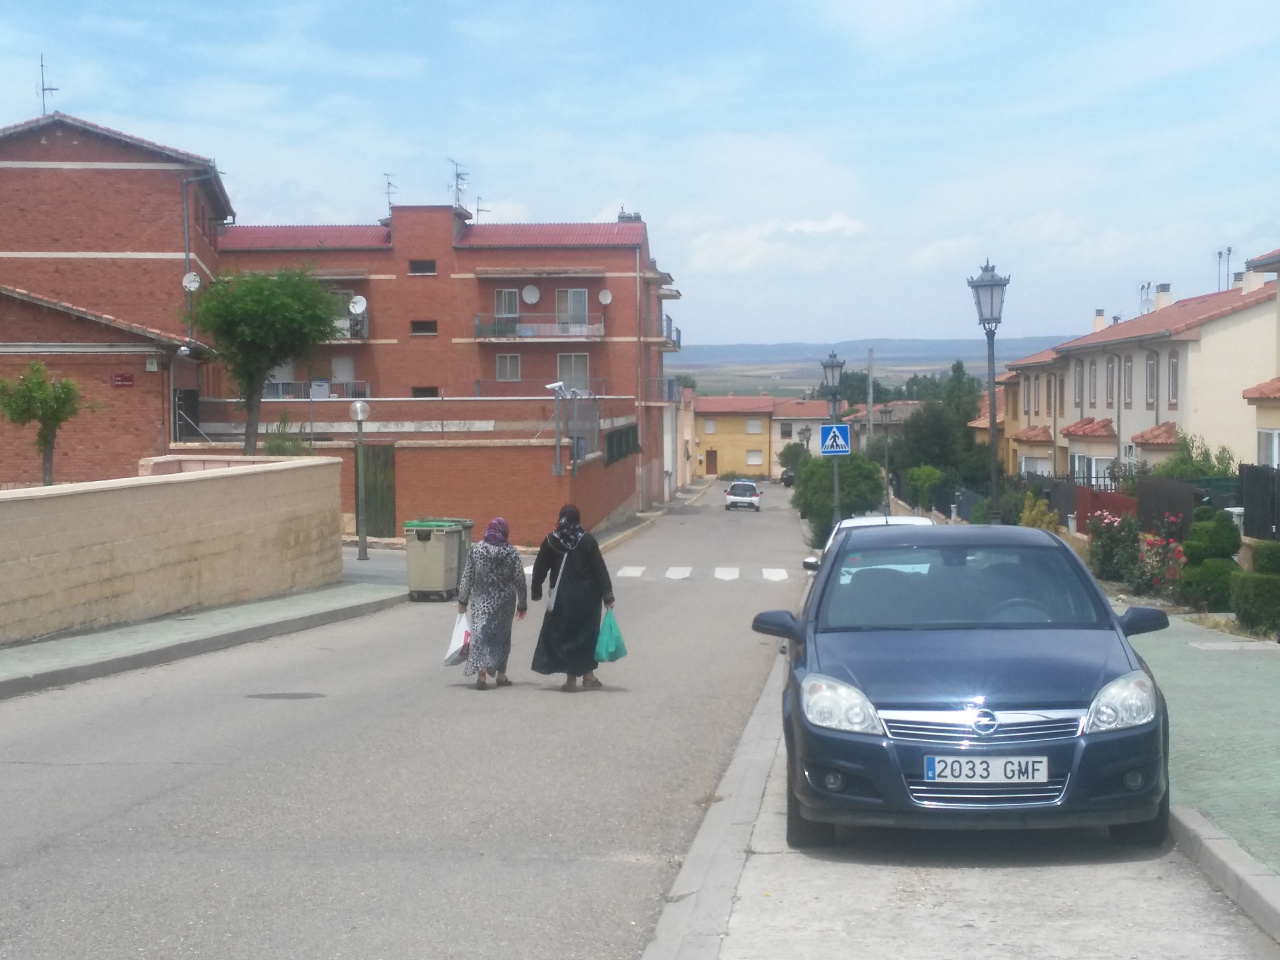 Mujeres musulmanas en Boceguillas